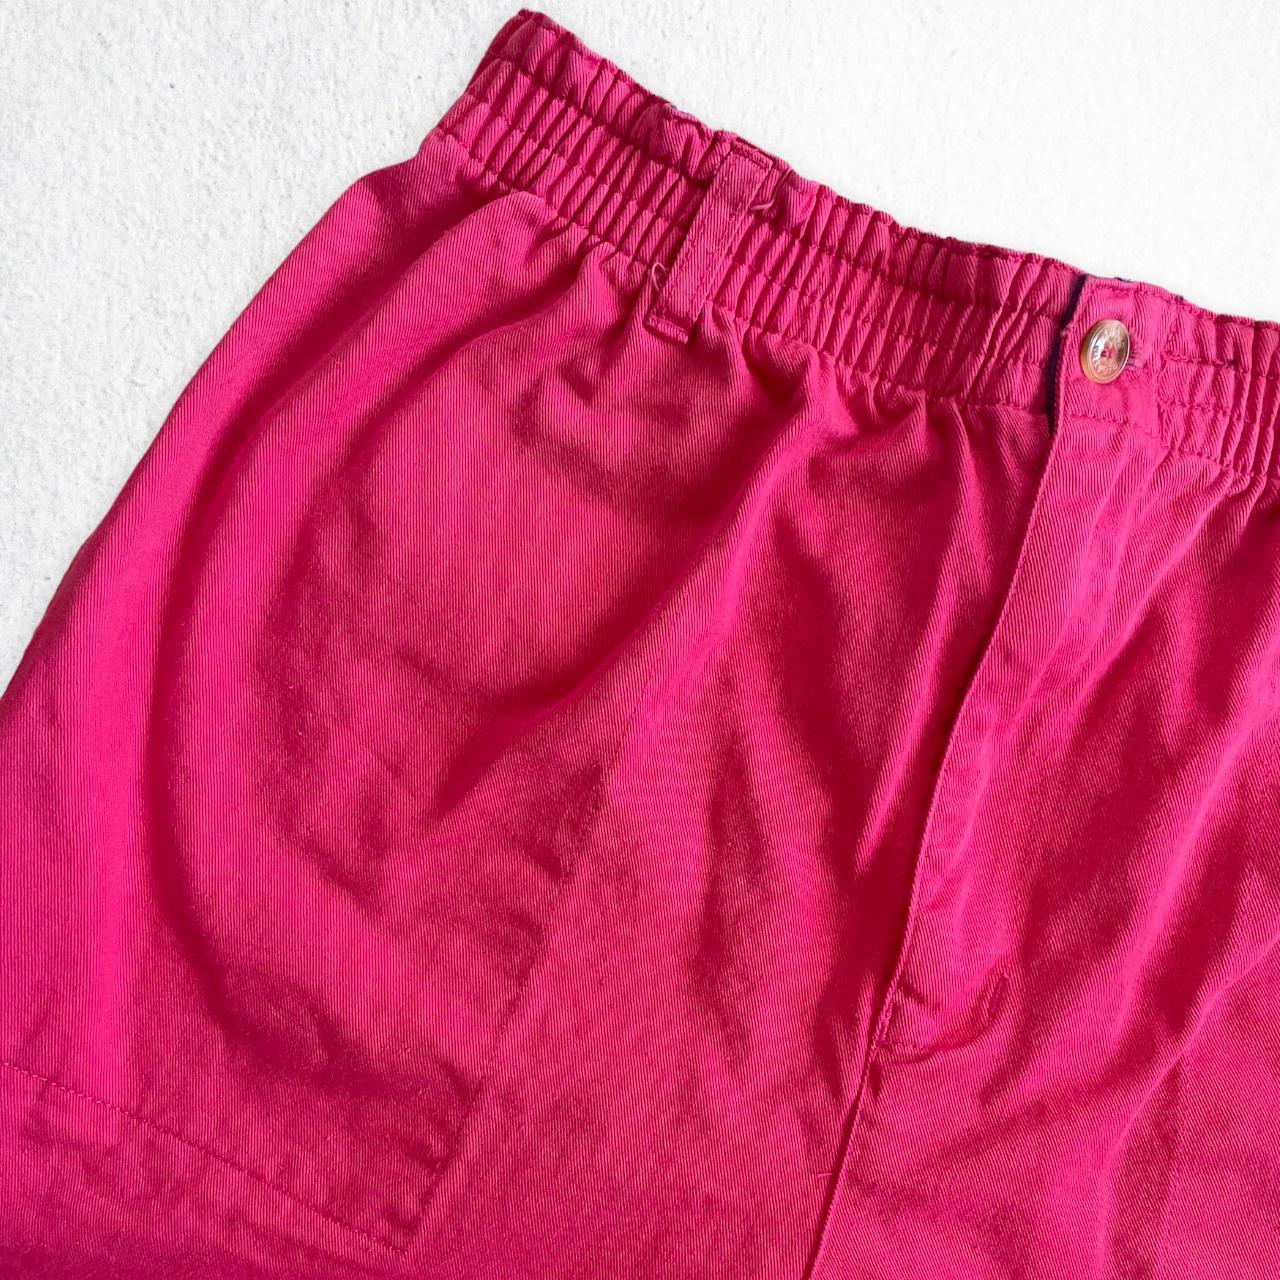 Product Image 2 - night waisted shorts

Upcycled Vintage 80's